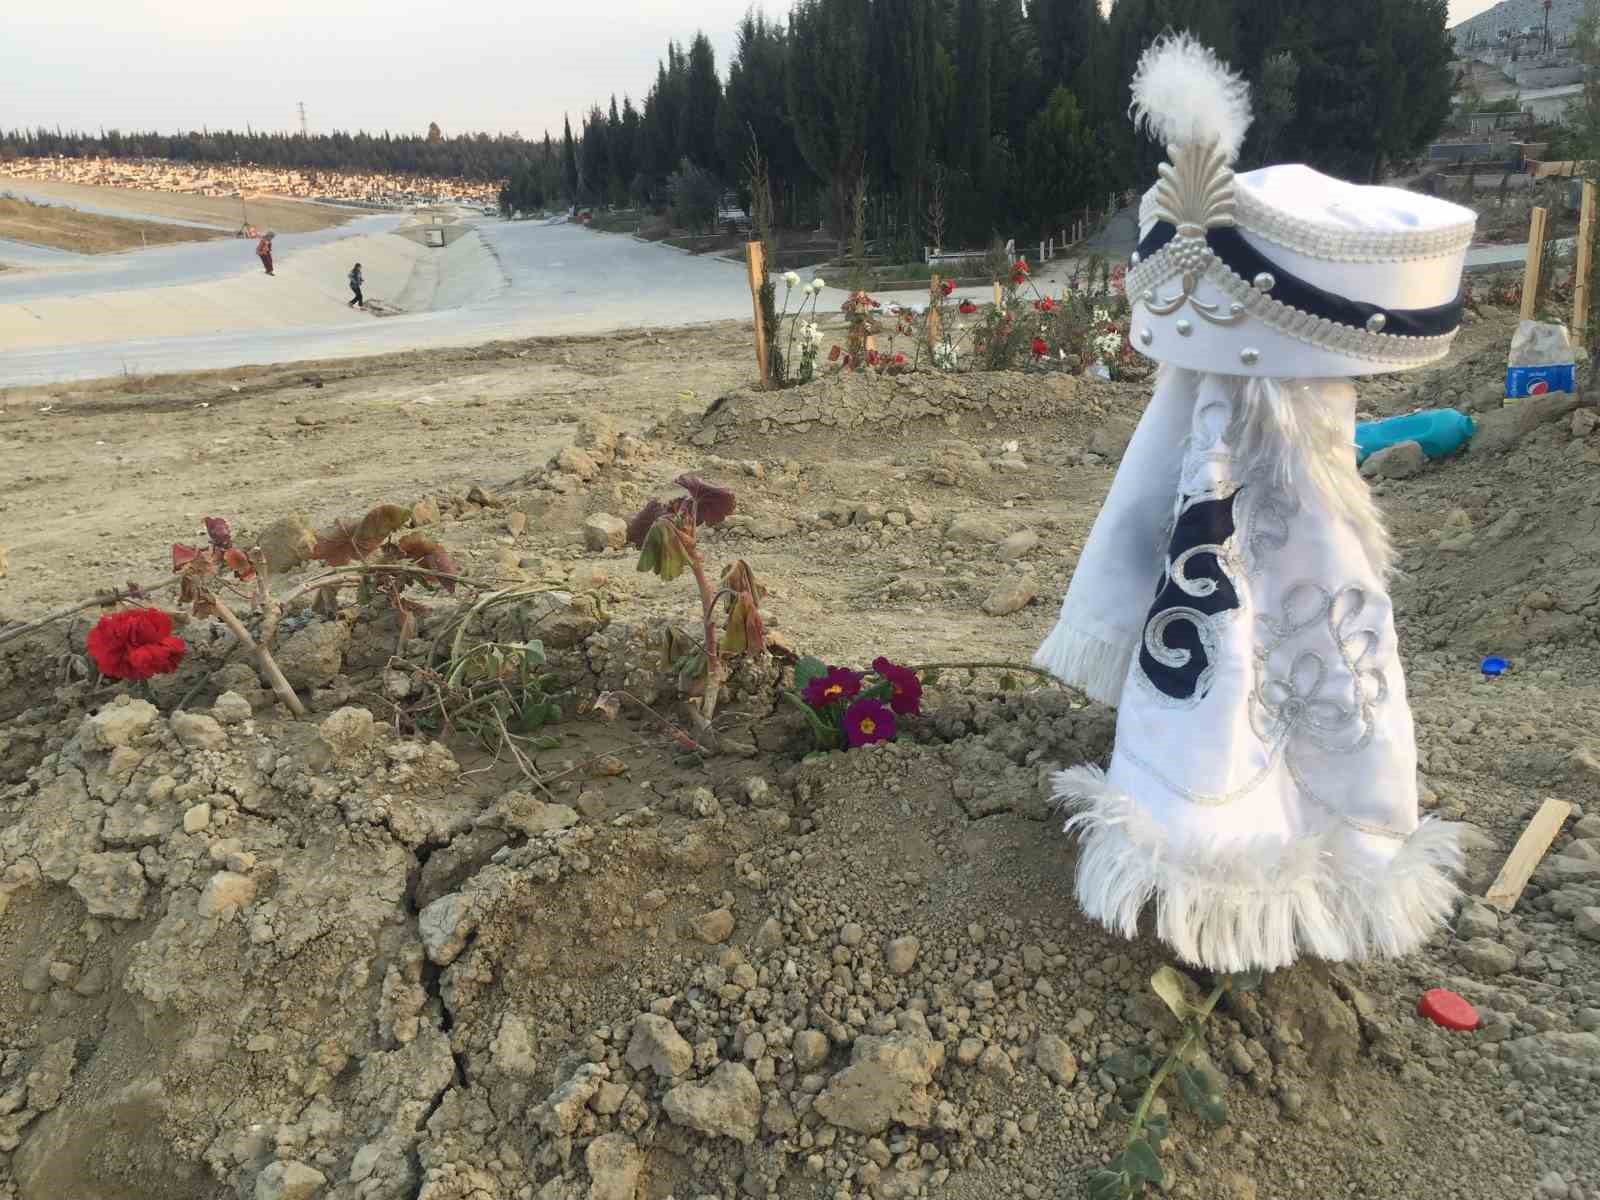 Depremde hayatını kaybedenlerin mezarları yürek yaktı